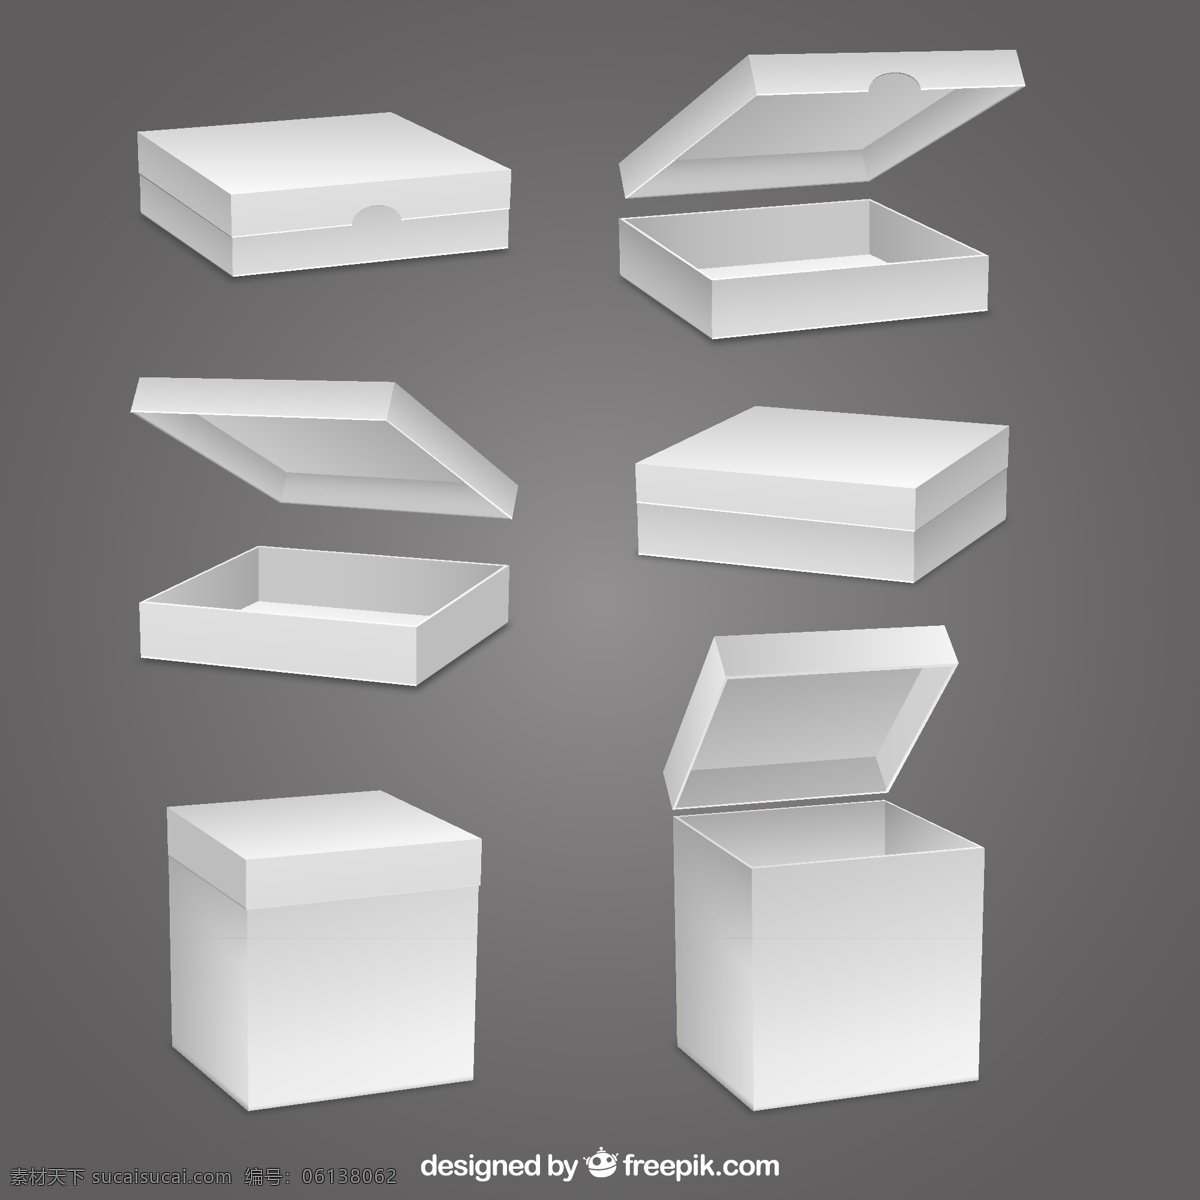 立体 空白 纸盒 矢量 包装盒 盒子 包装 矢量图